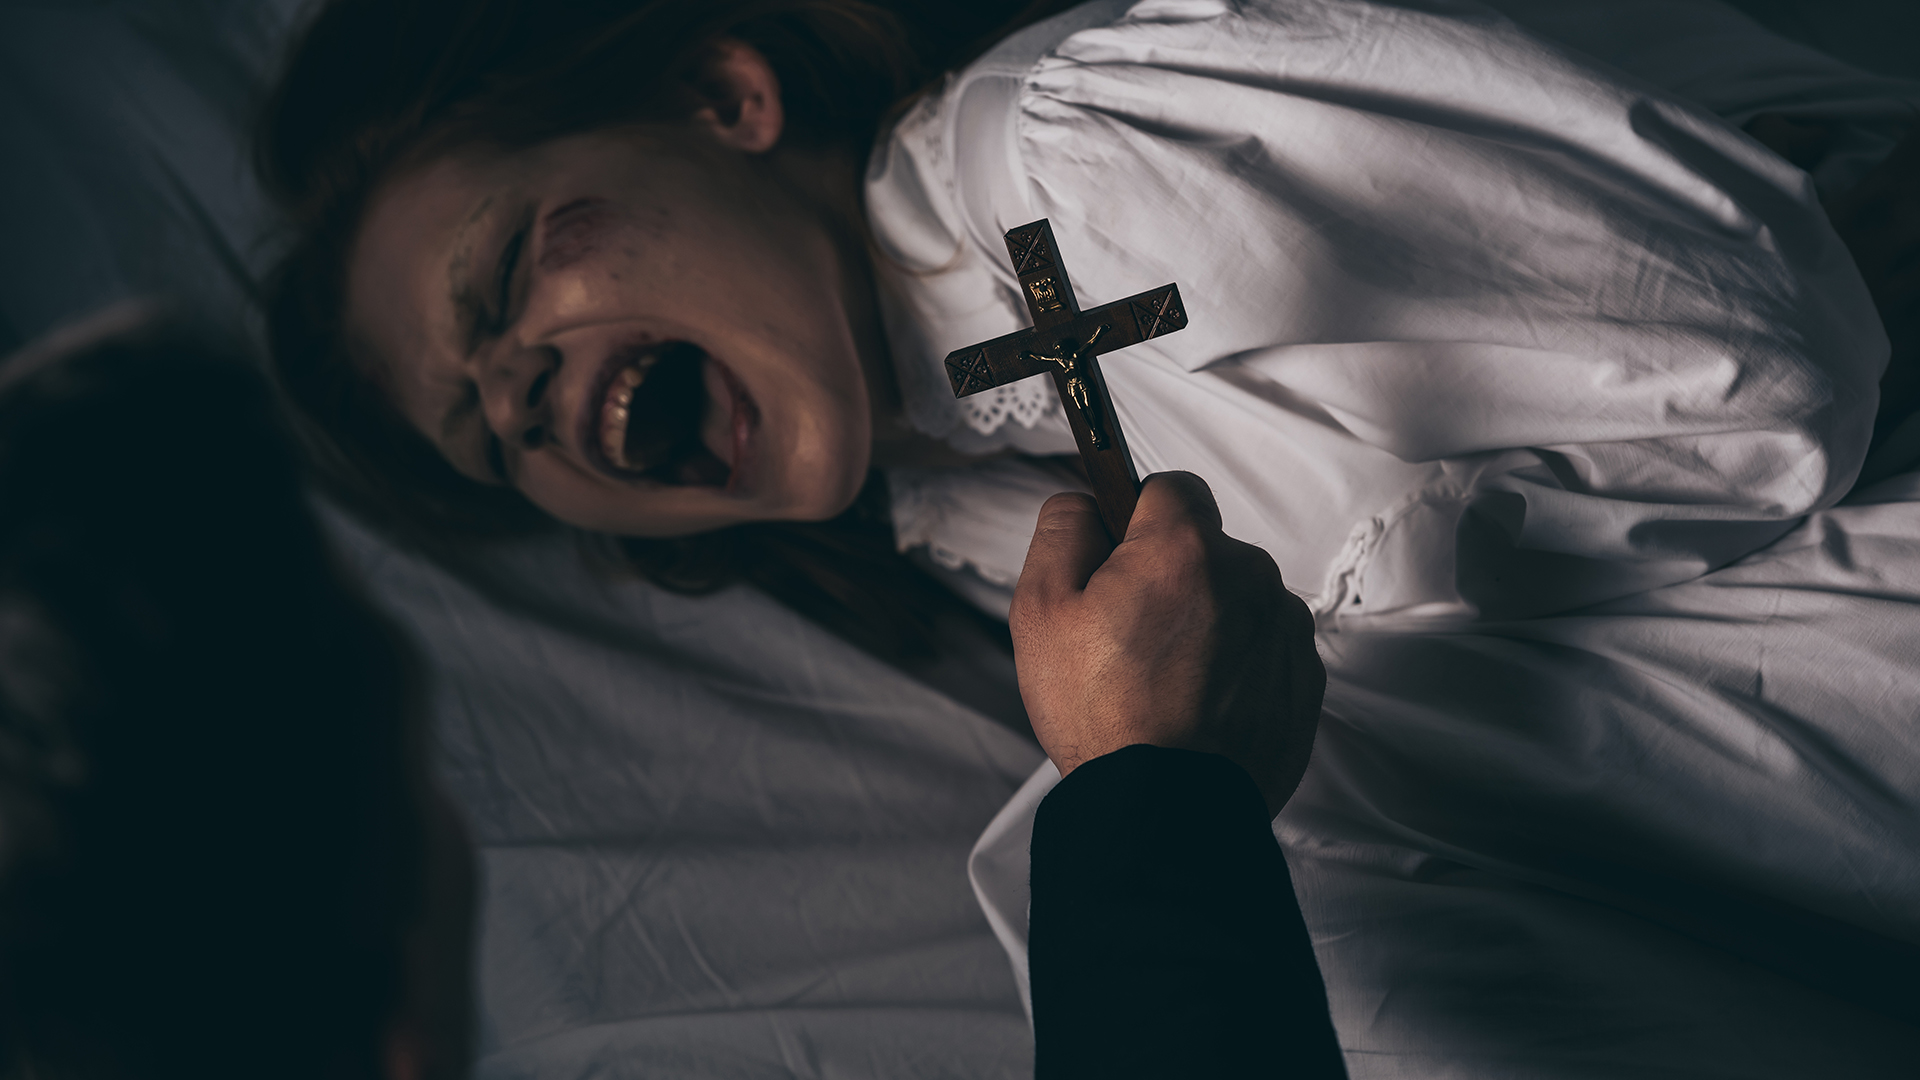 Skutočne bola posadnutá démonmi? 23-ročná Anneliese Michel zomrela počas exorcizmu